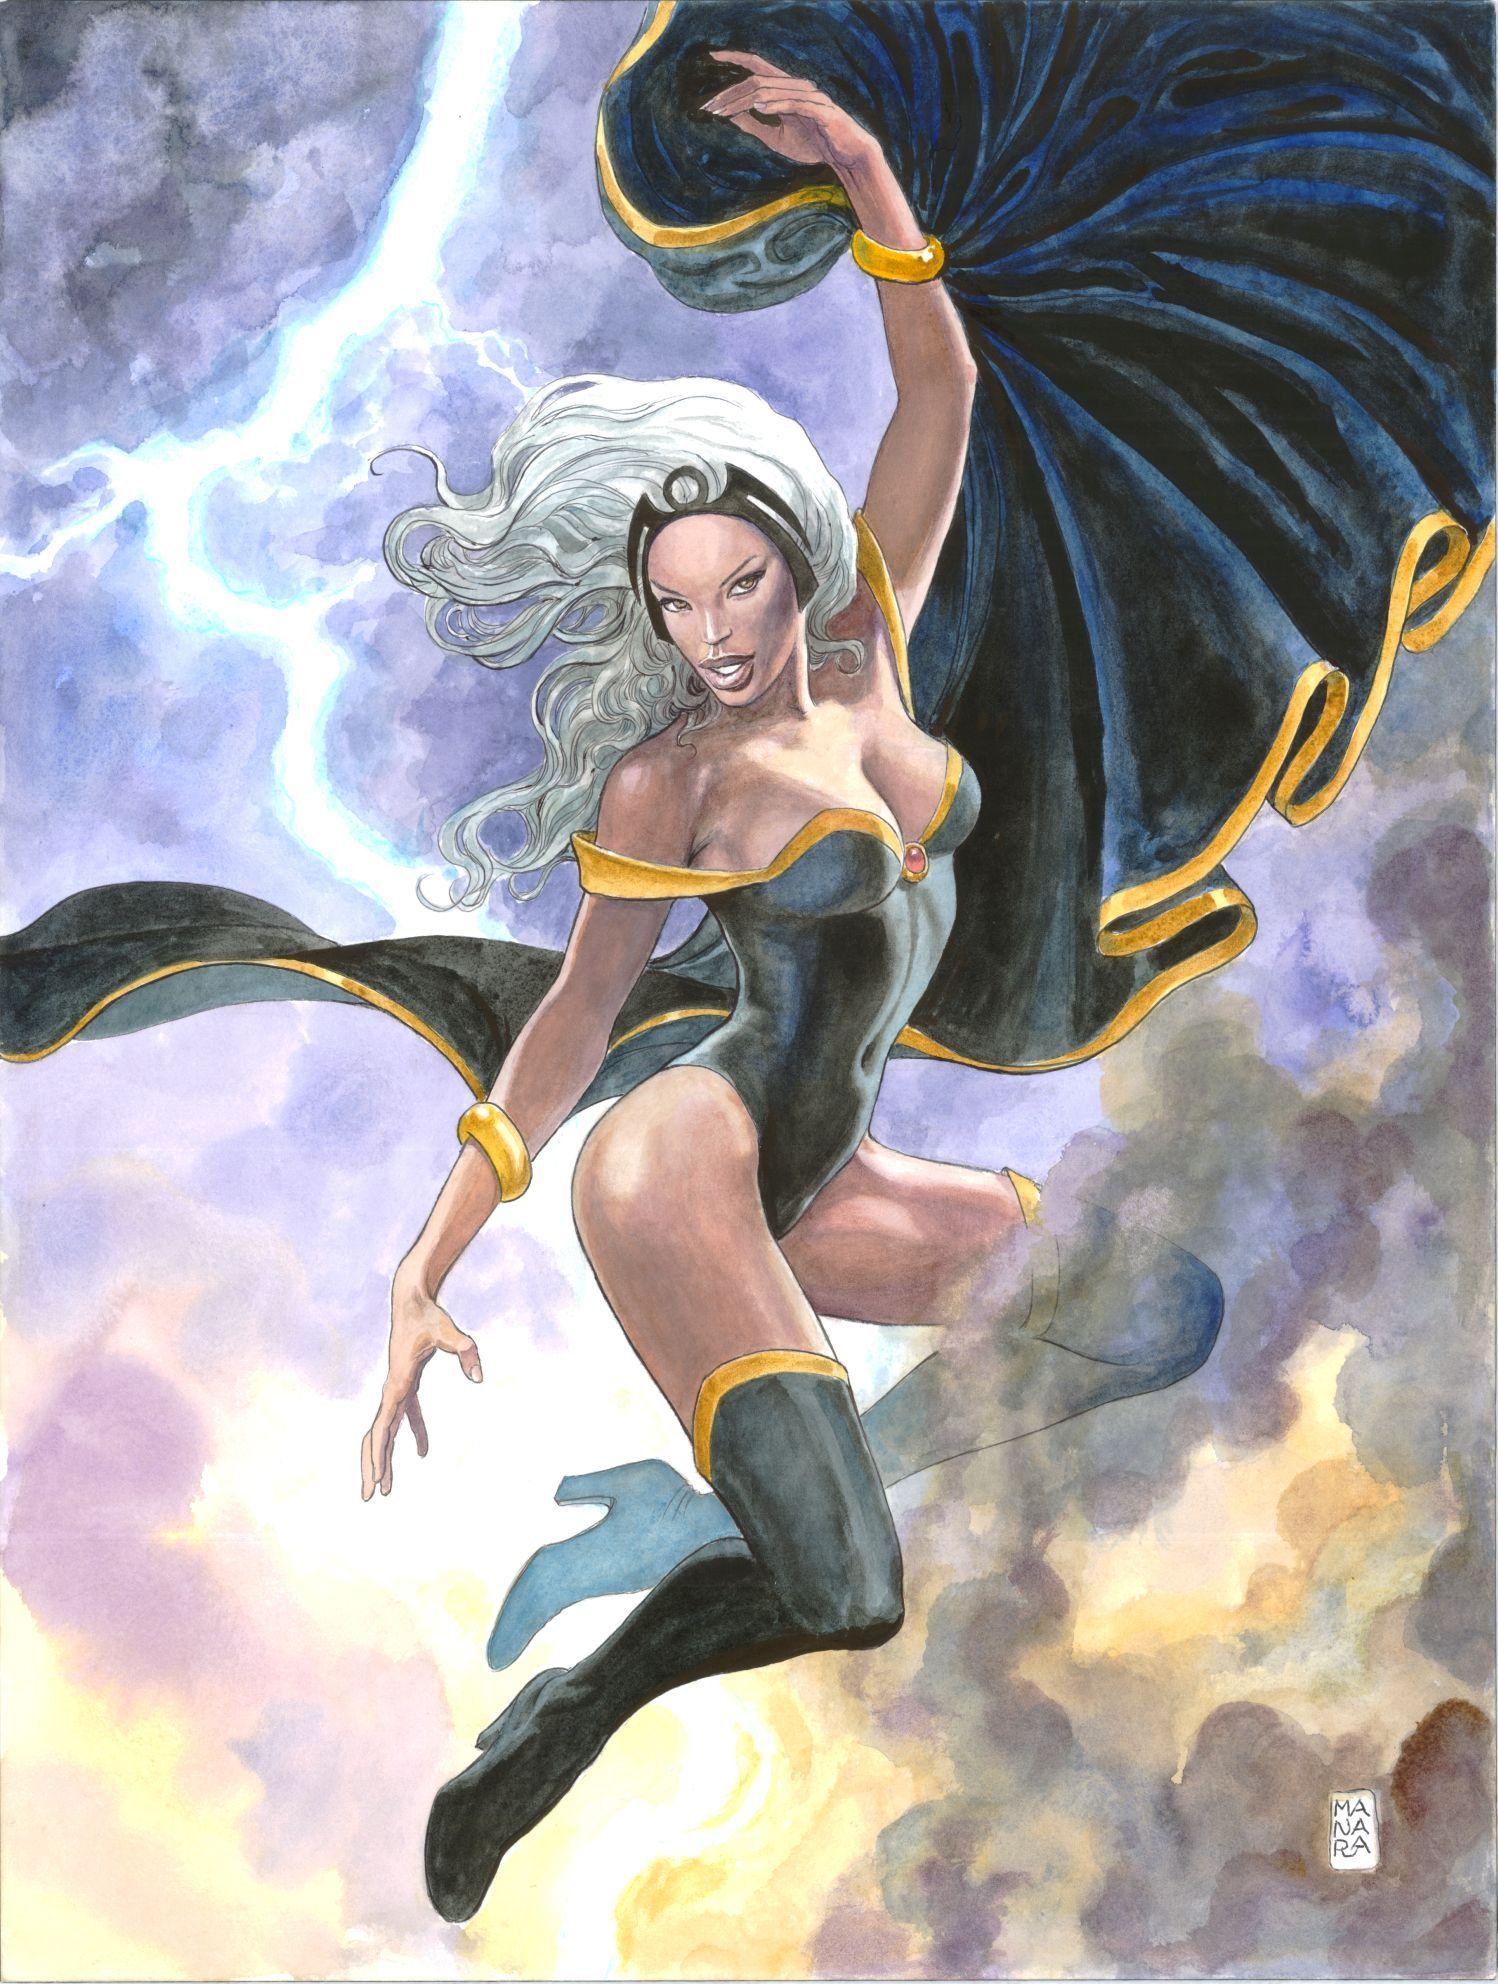 Capas de Milo Manara da Marvel Comics - Tempestade - Blog Farofeiros